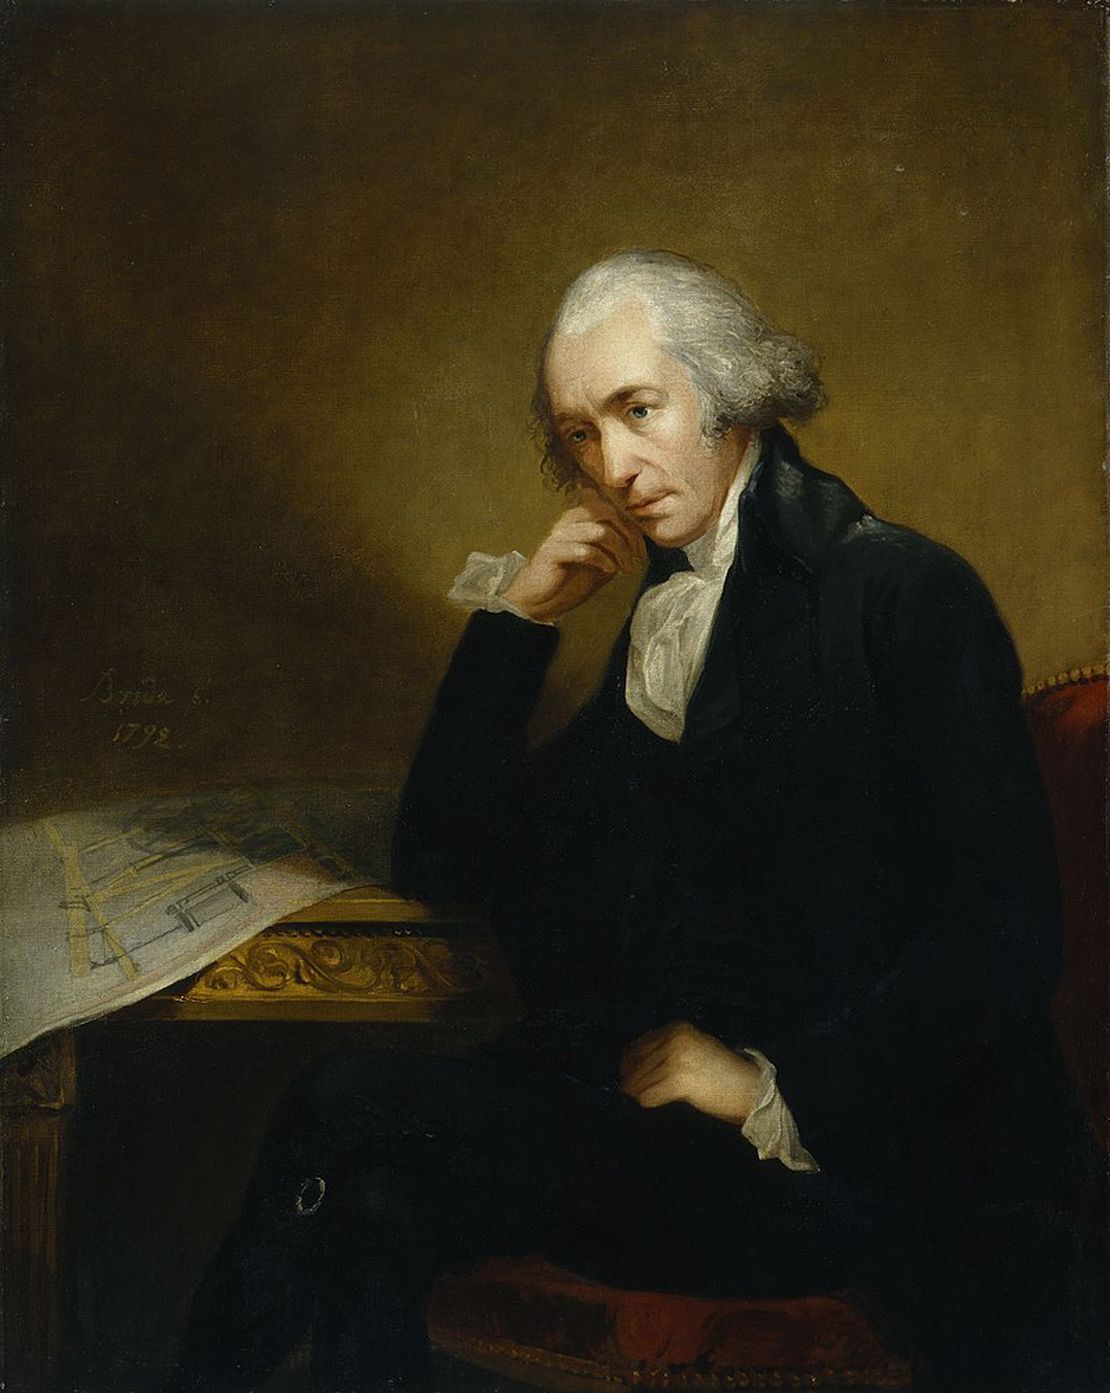 James Watt, Scottish steam engine inventor, born